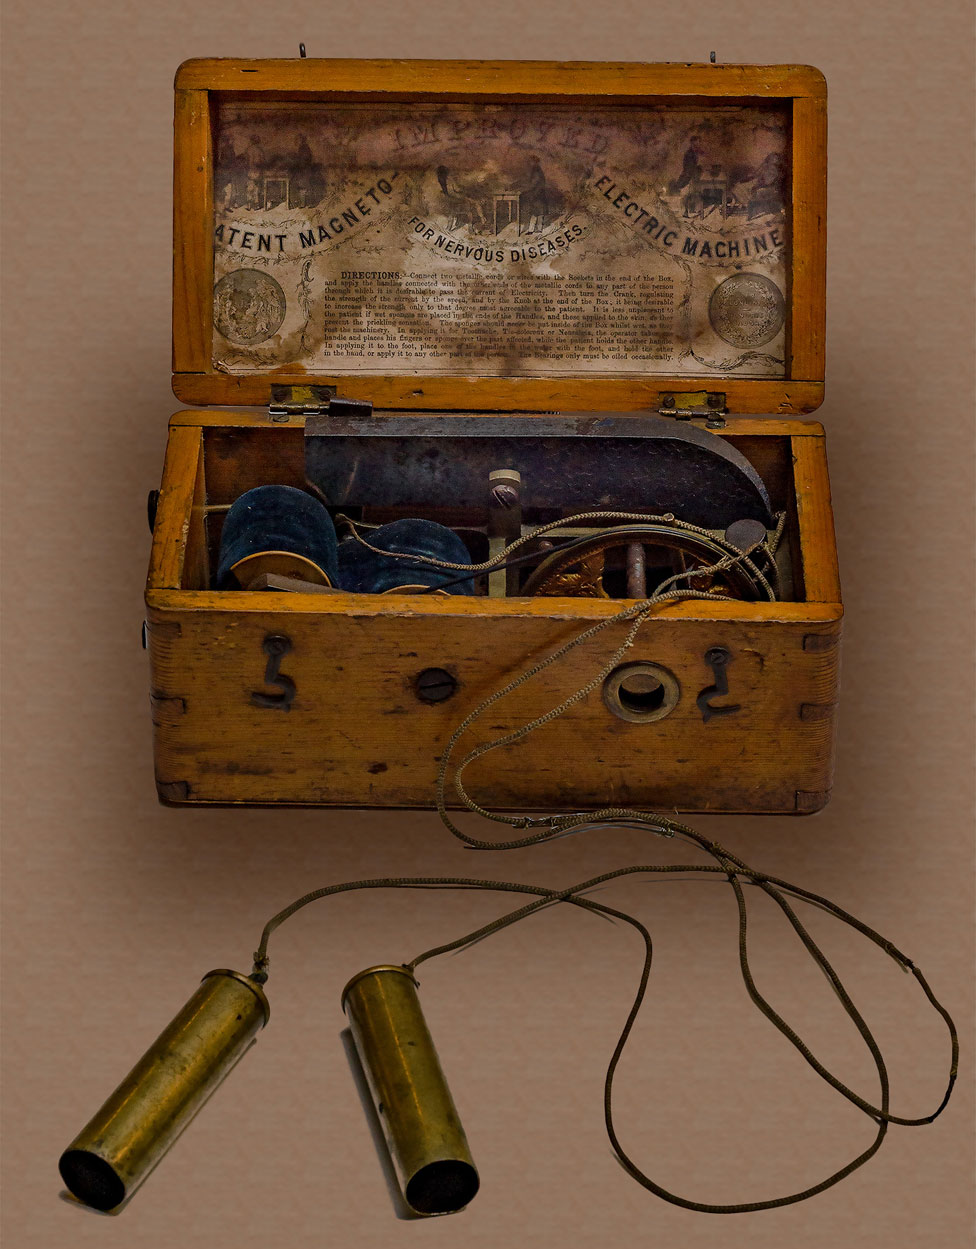 La máquina electromagnética del siglo XIX que forma parte de la exposición.